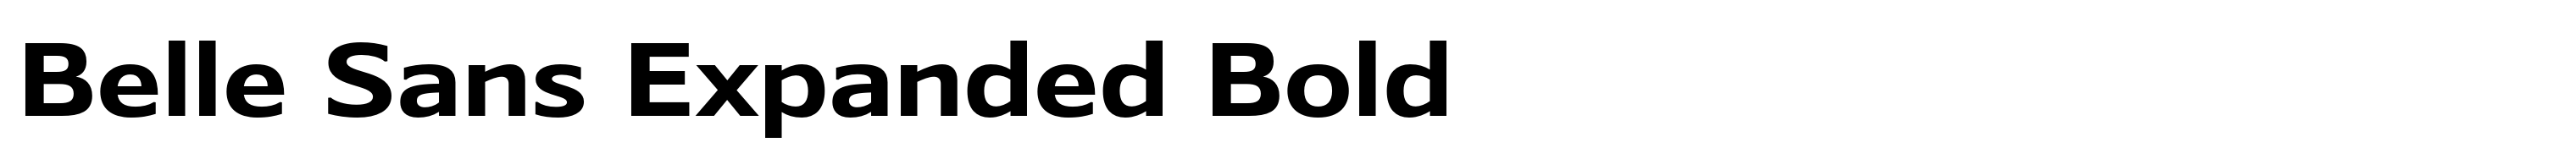 Belle Sans Expanded Bold